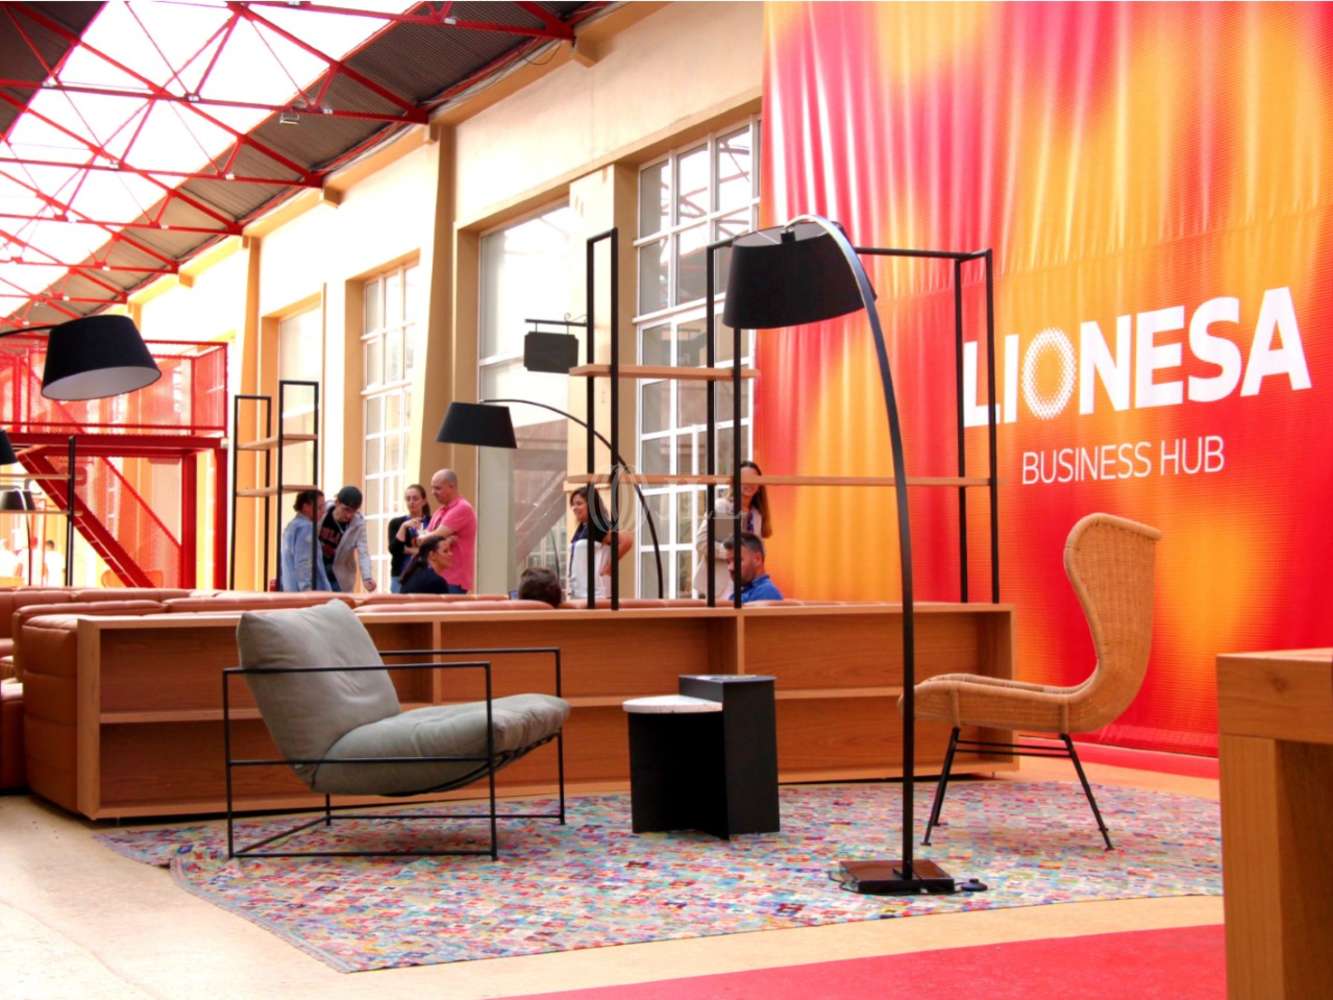 Escritórios Matosinhos - Lionesa Business Hub